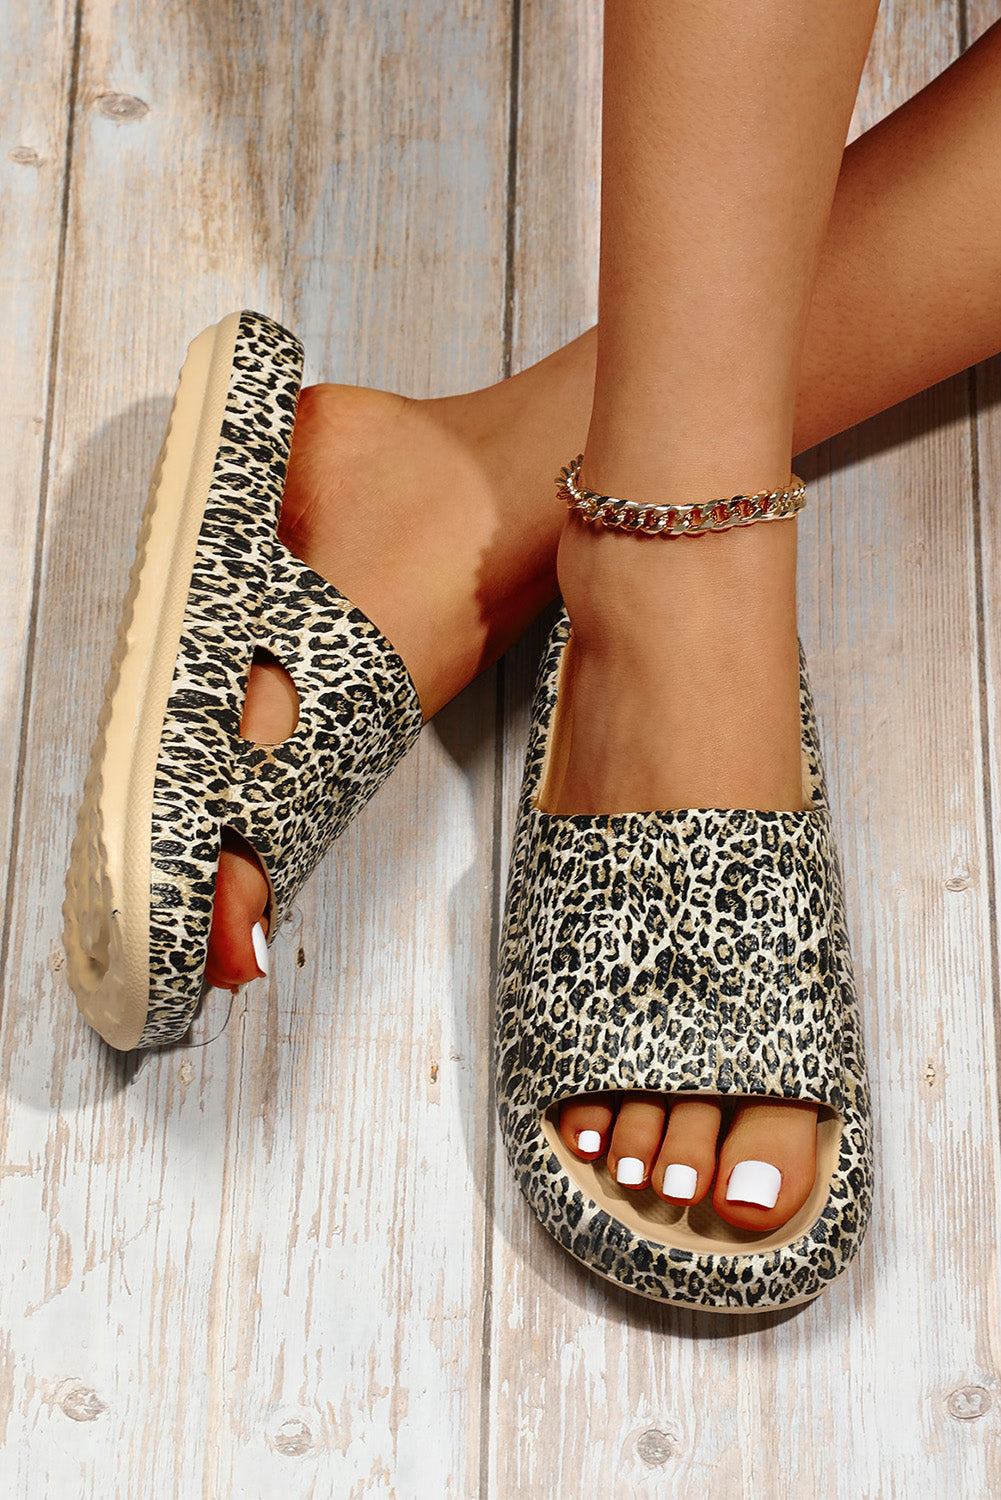 Leopard Print Casual Soft Rubber Slides Shoes